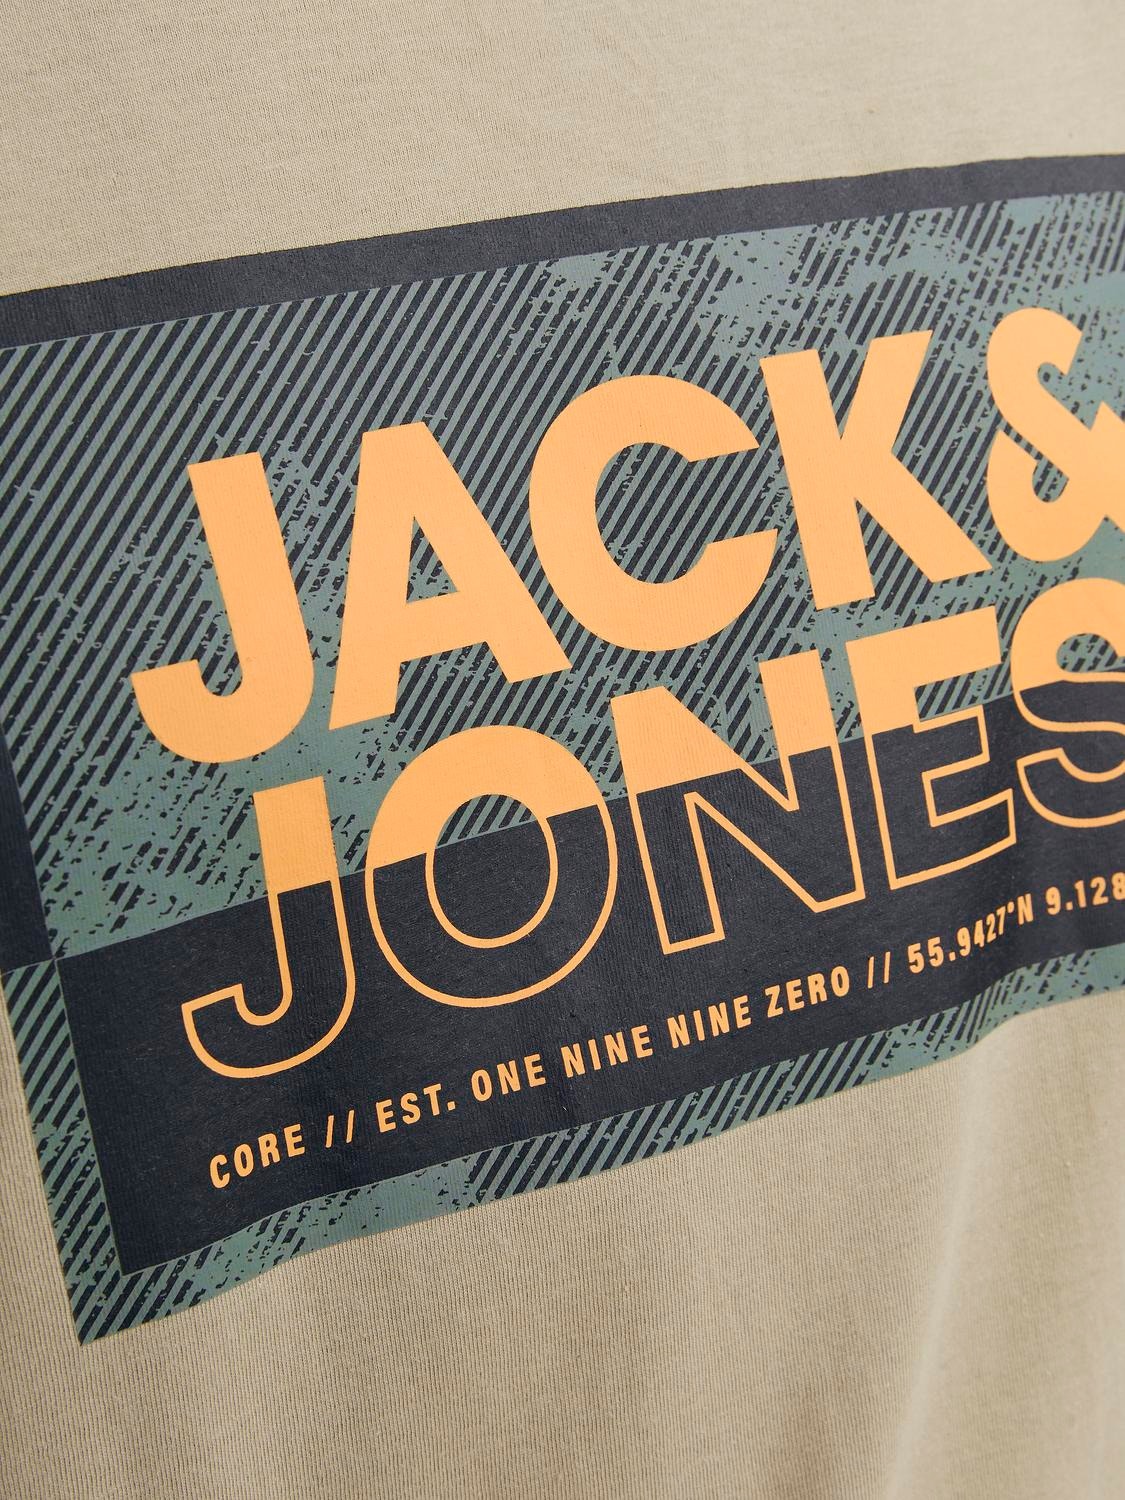 Jack & Jones Logo Kruhový výstřih Tričko -Crockery - 12253442